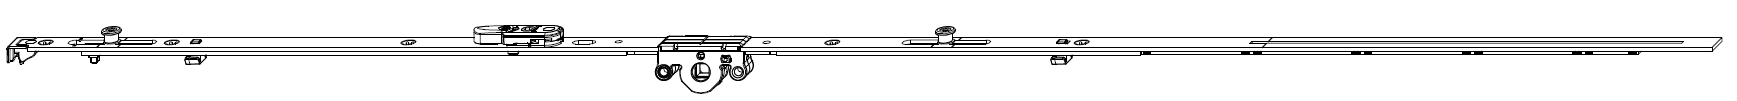 MAICO -  Cremonese MULTI-MATIC anta ribalta antieffrazione altezza maniglia fissa con piedino e dss per ribalta - gr / dim. 1700 - entrata 15 - alt. man. 700 - lbb/hbb 1591 - 1700